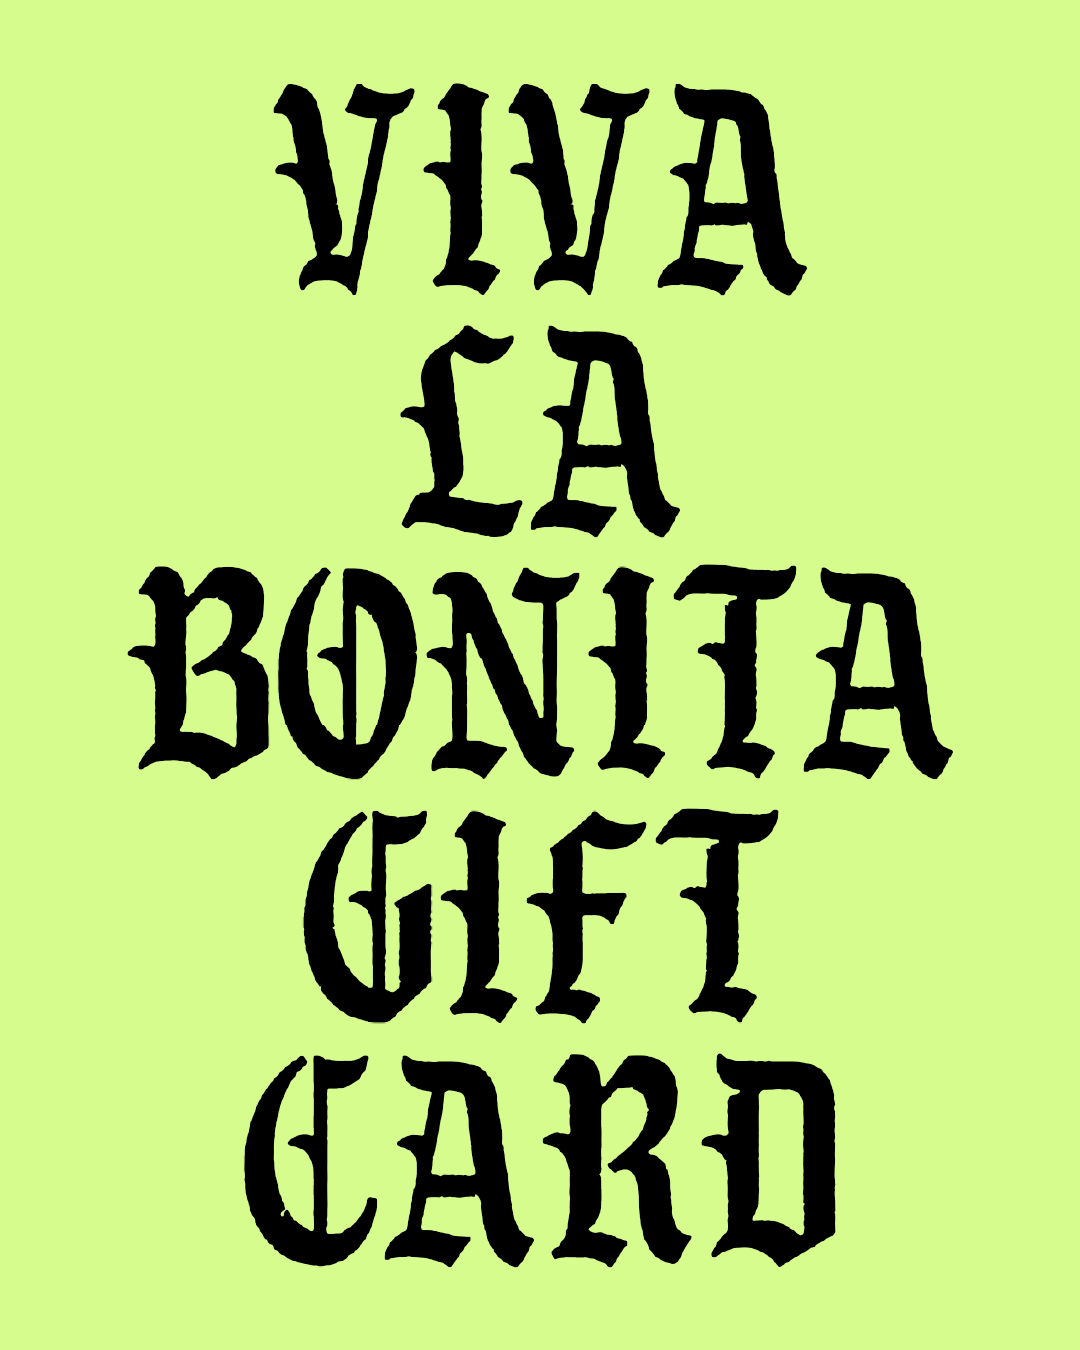 Viva La Bonita Gift Card